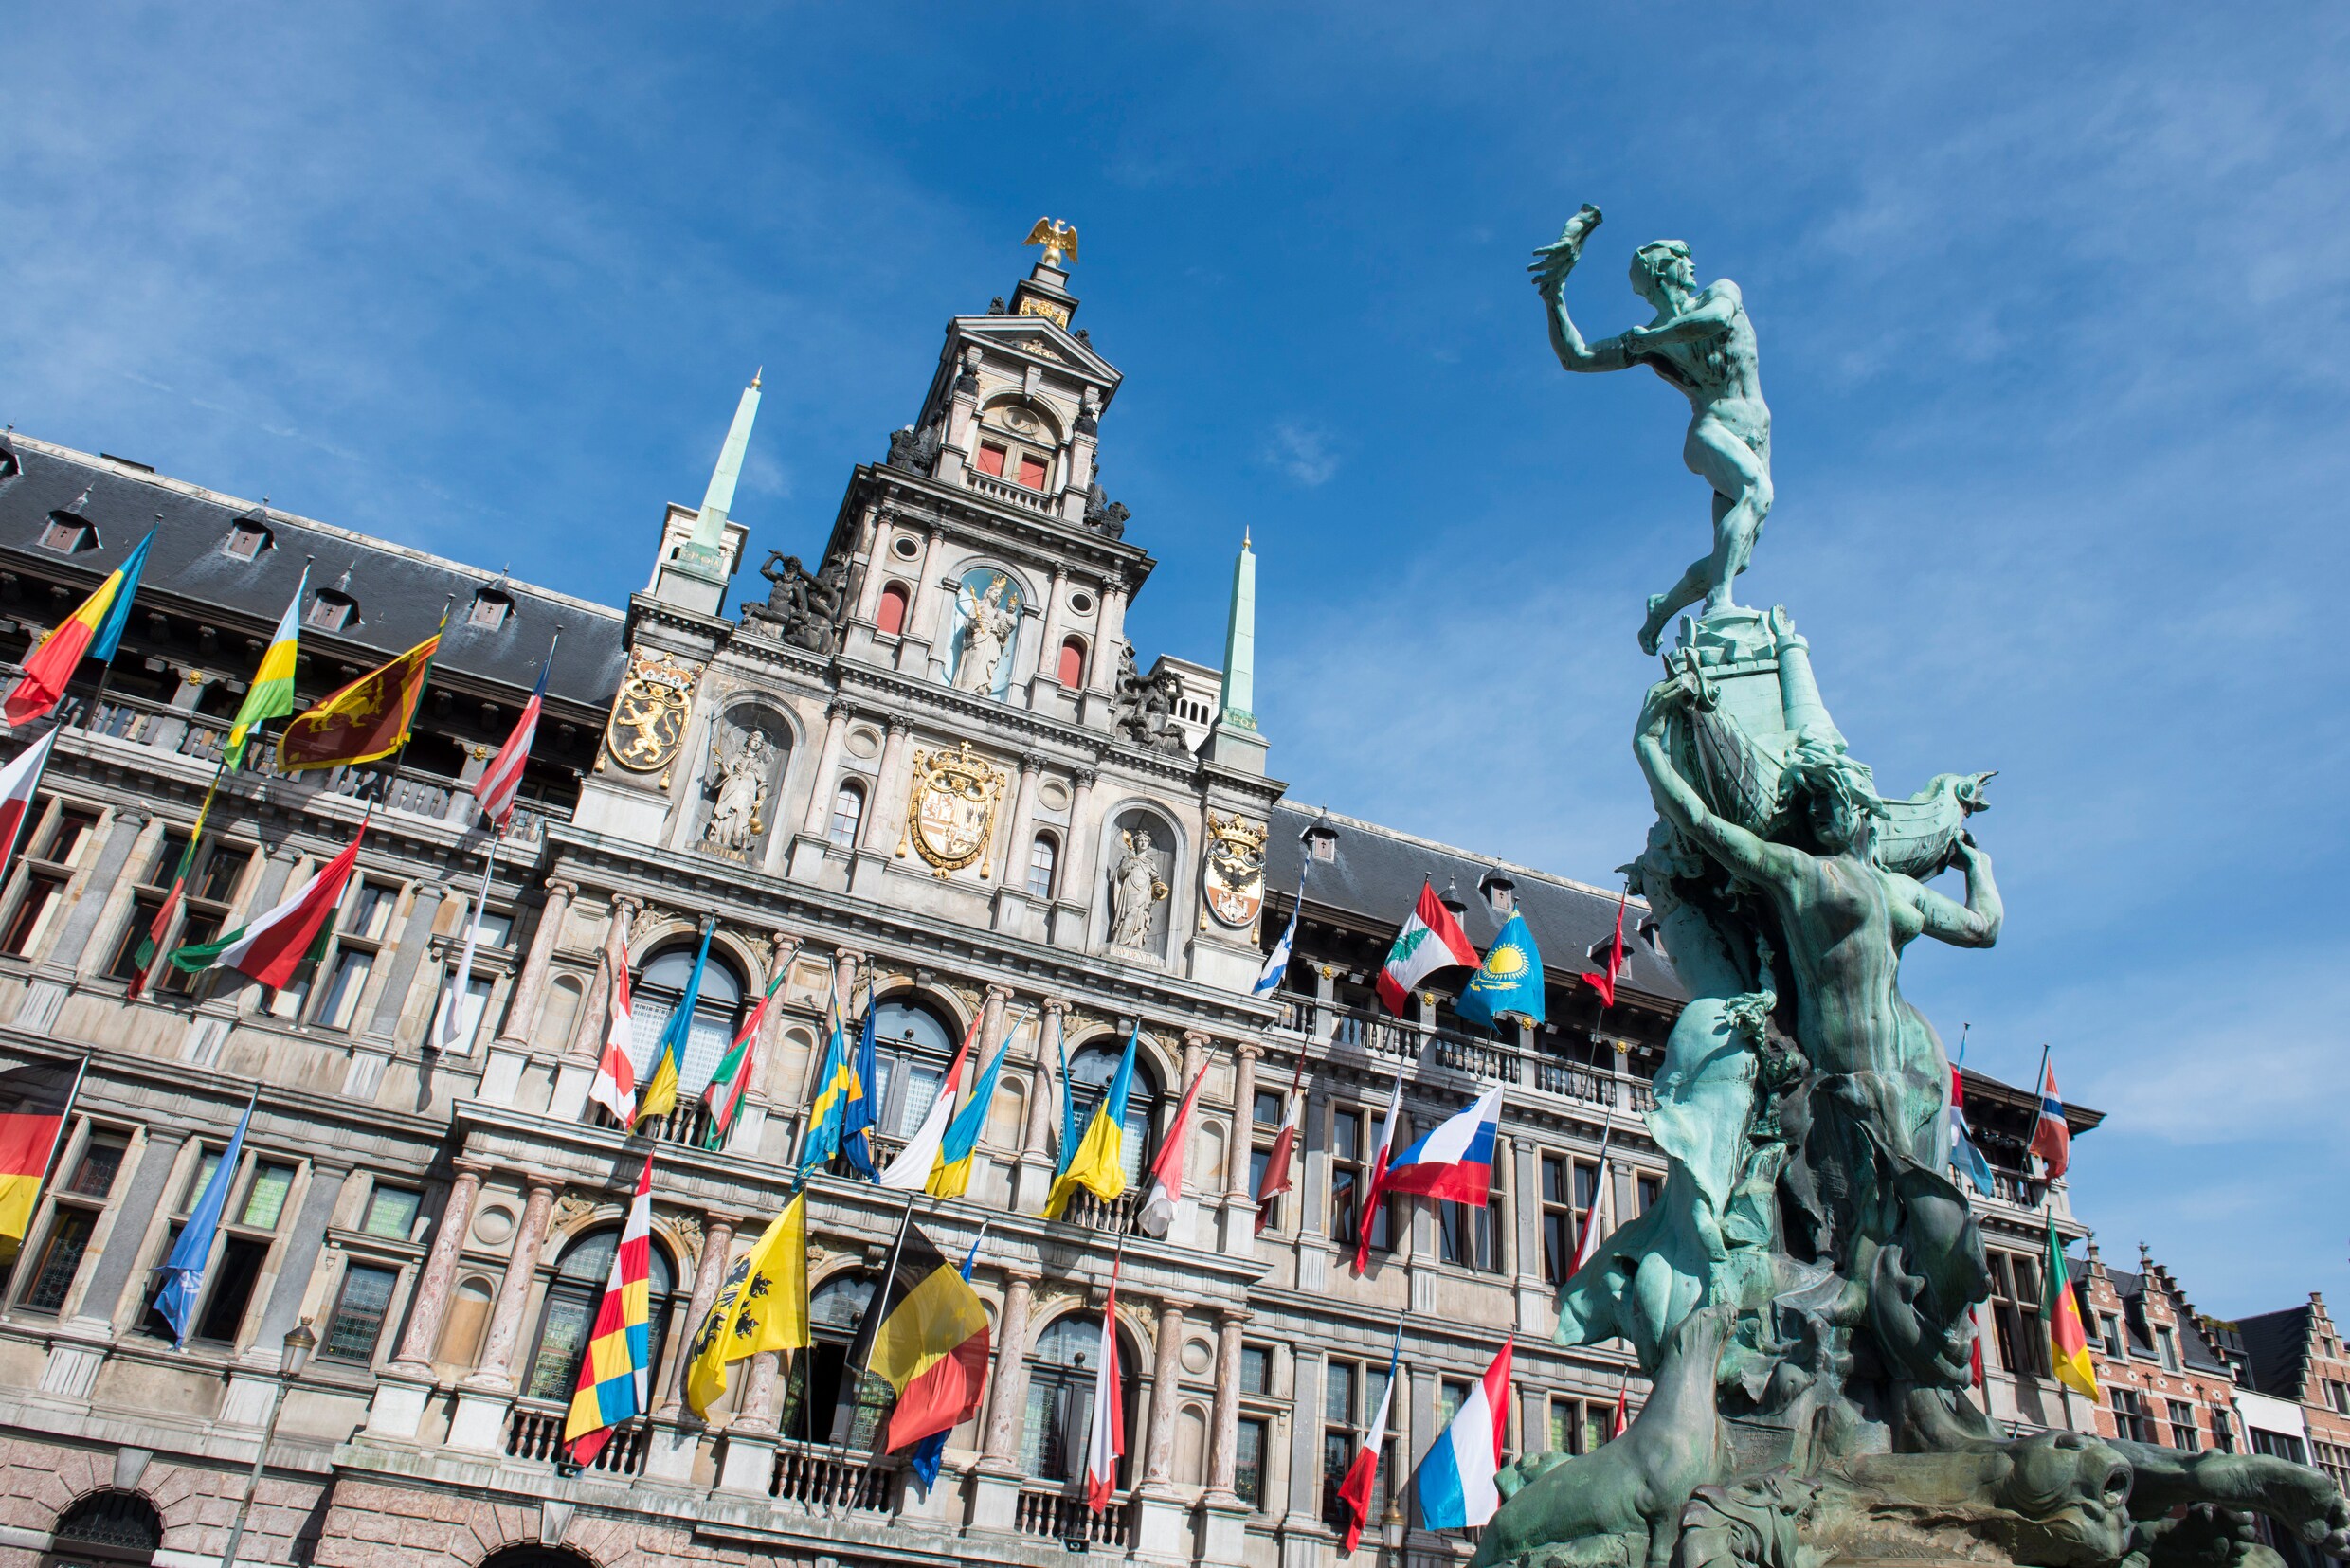 Antwerpse hotels geven straks geregistreerde klanten exclusieve kortingen